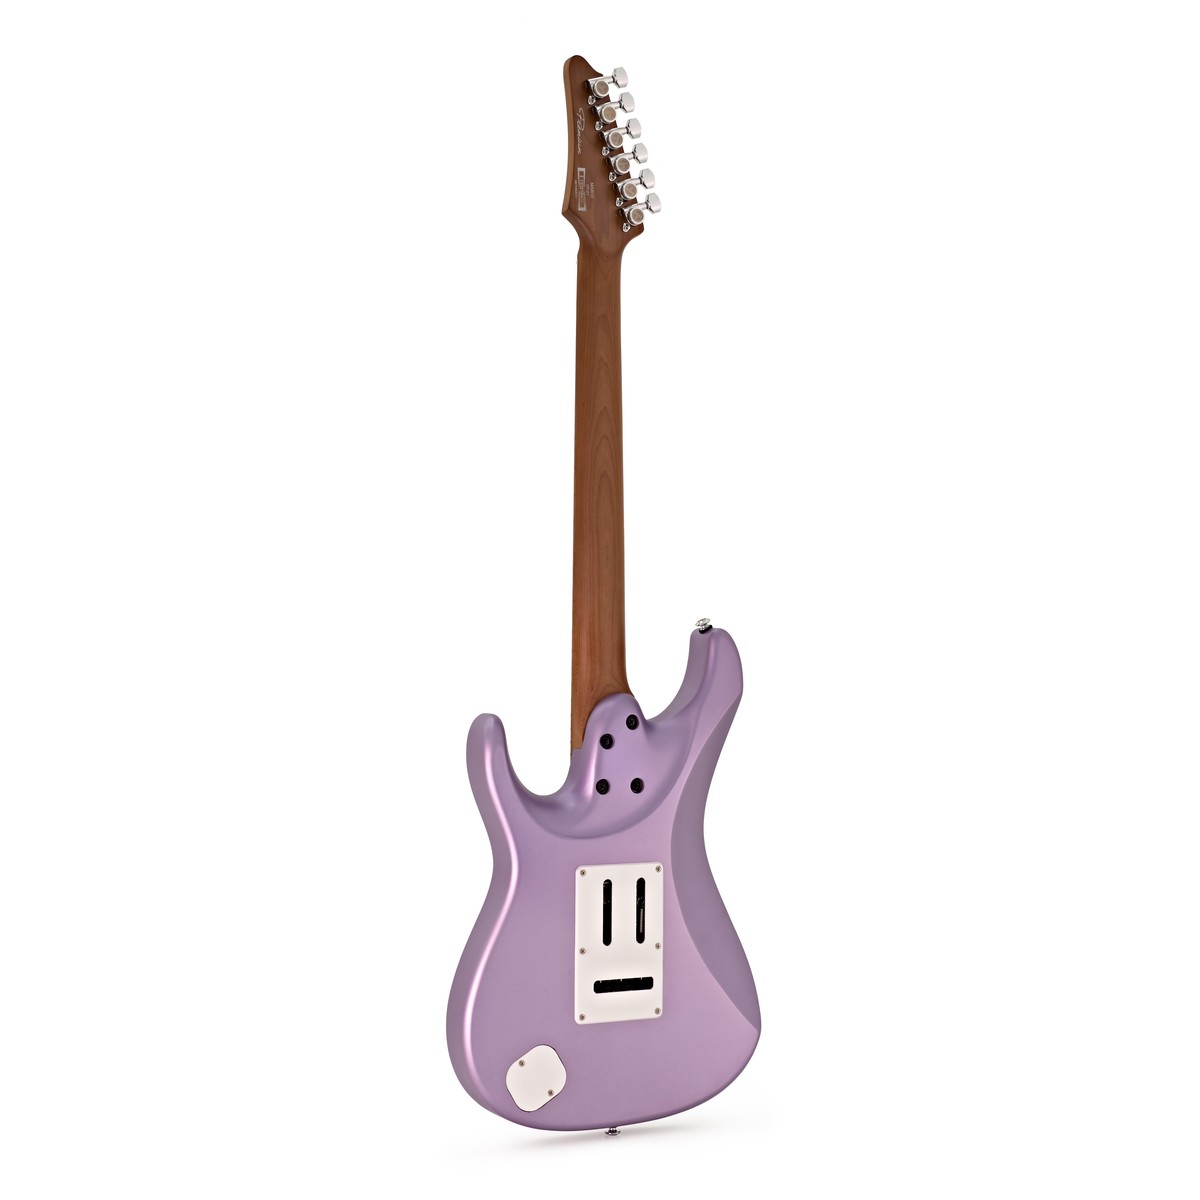 Ibanez Mario Camarena Mar10 Lmm Premium Signature Hss Trem Mn +housse - Lavender Metallic Matte - Elektrische gitaar in Str-vorm - Variation 1